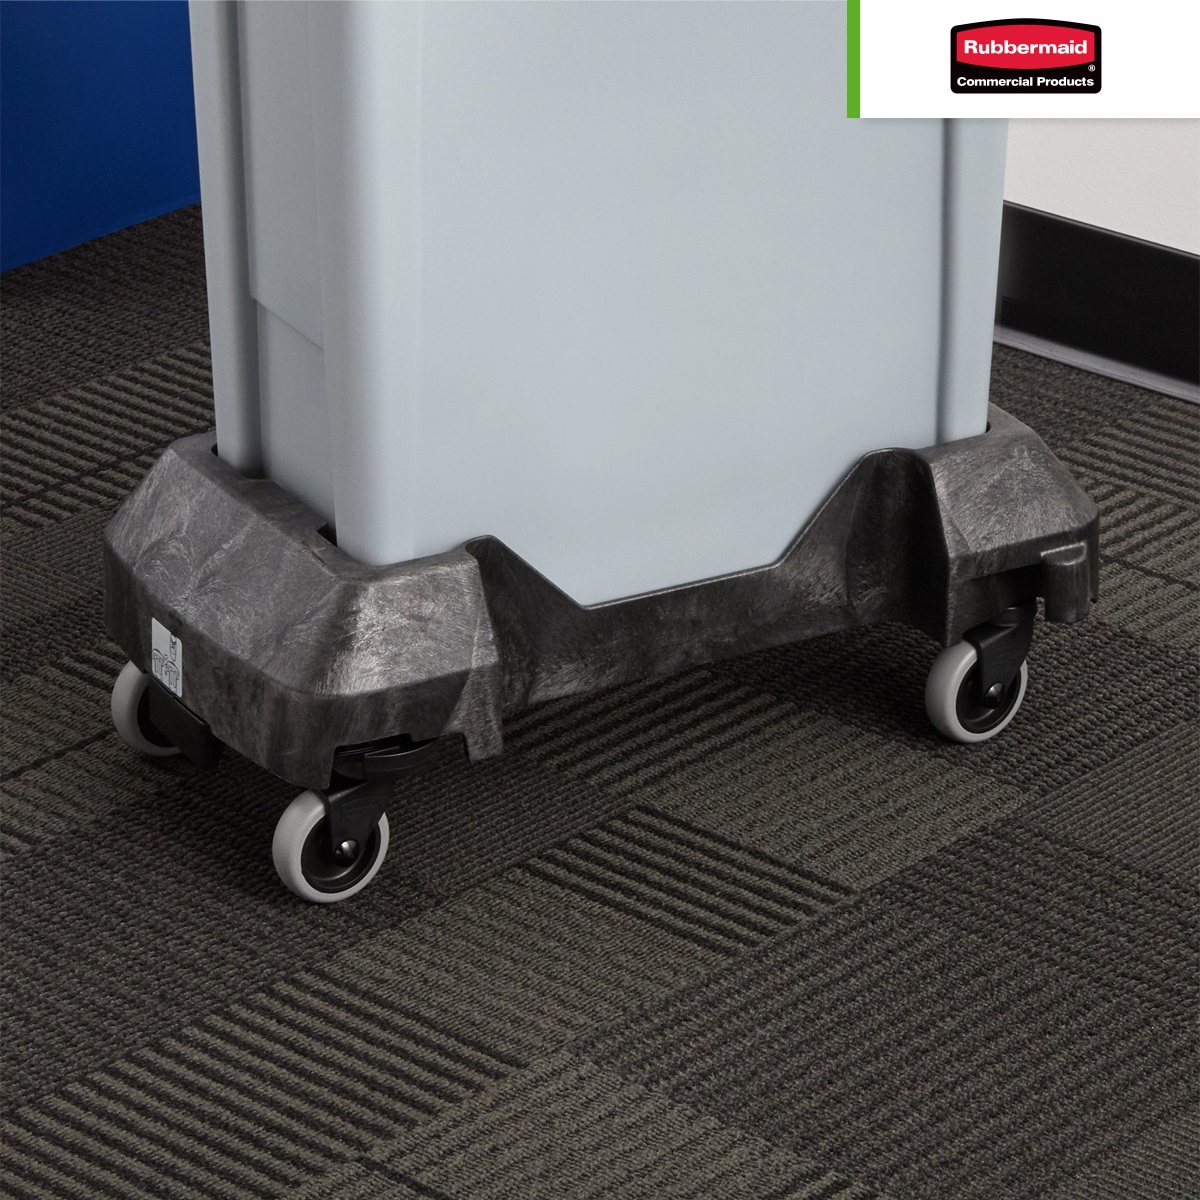 plataforma-con-ruedas-para-contenedor-rubbermaid-slim-jim-negro-003.jpg